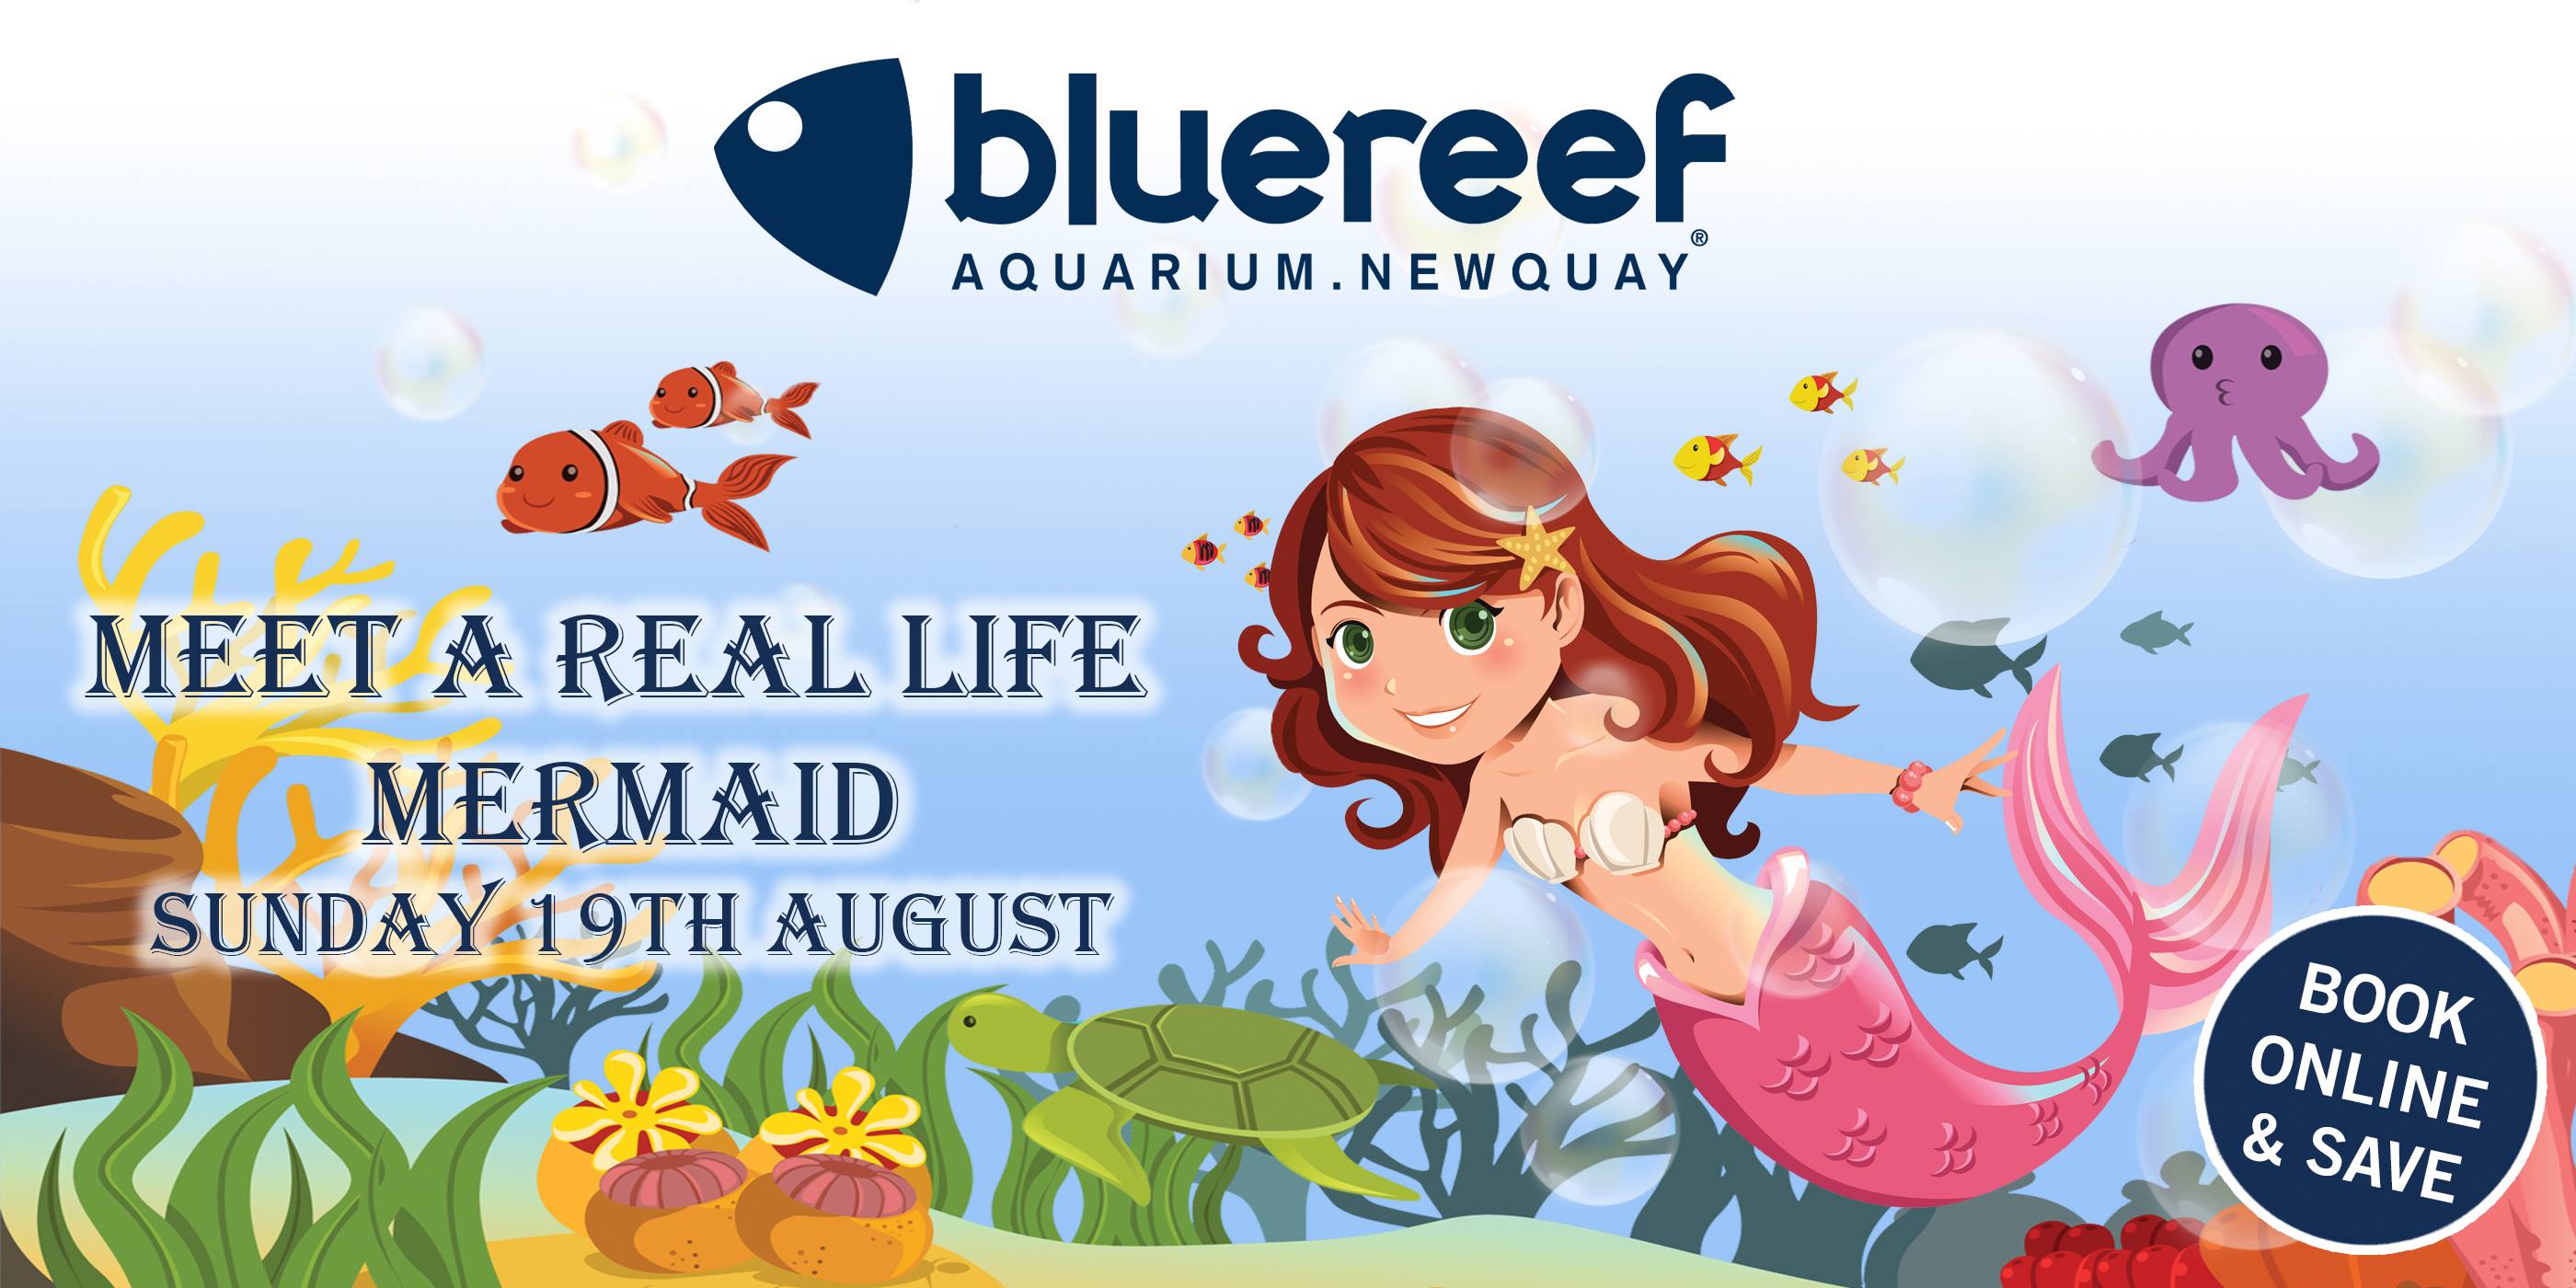 Meet a mermaid at Blue Reef Aquarium Newquay